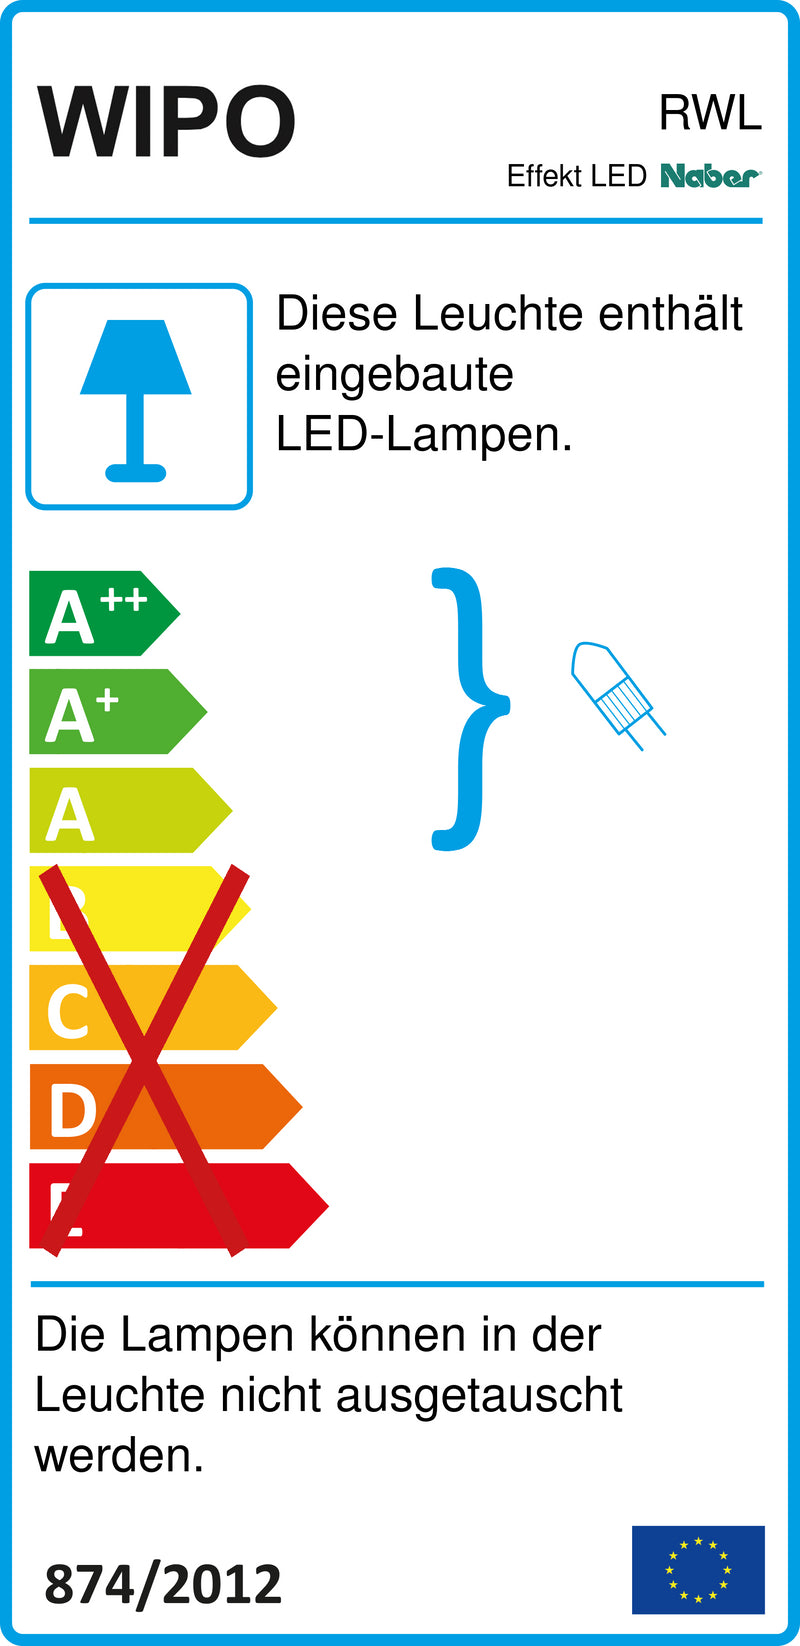 E-Label zu Zeichnung zu Effekt LED als Variante L 511,2 mm, 7,15 W, edelstahlfarbig von Naber GmbH in der Kategorie Lichttechnik in Österreich auf conceptshop.at